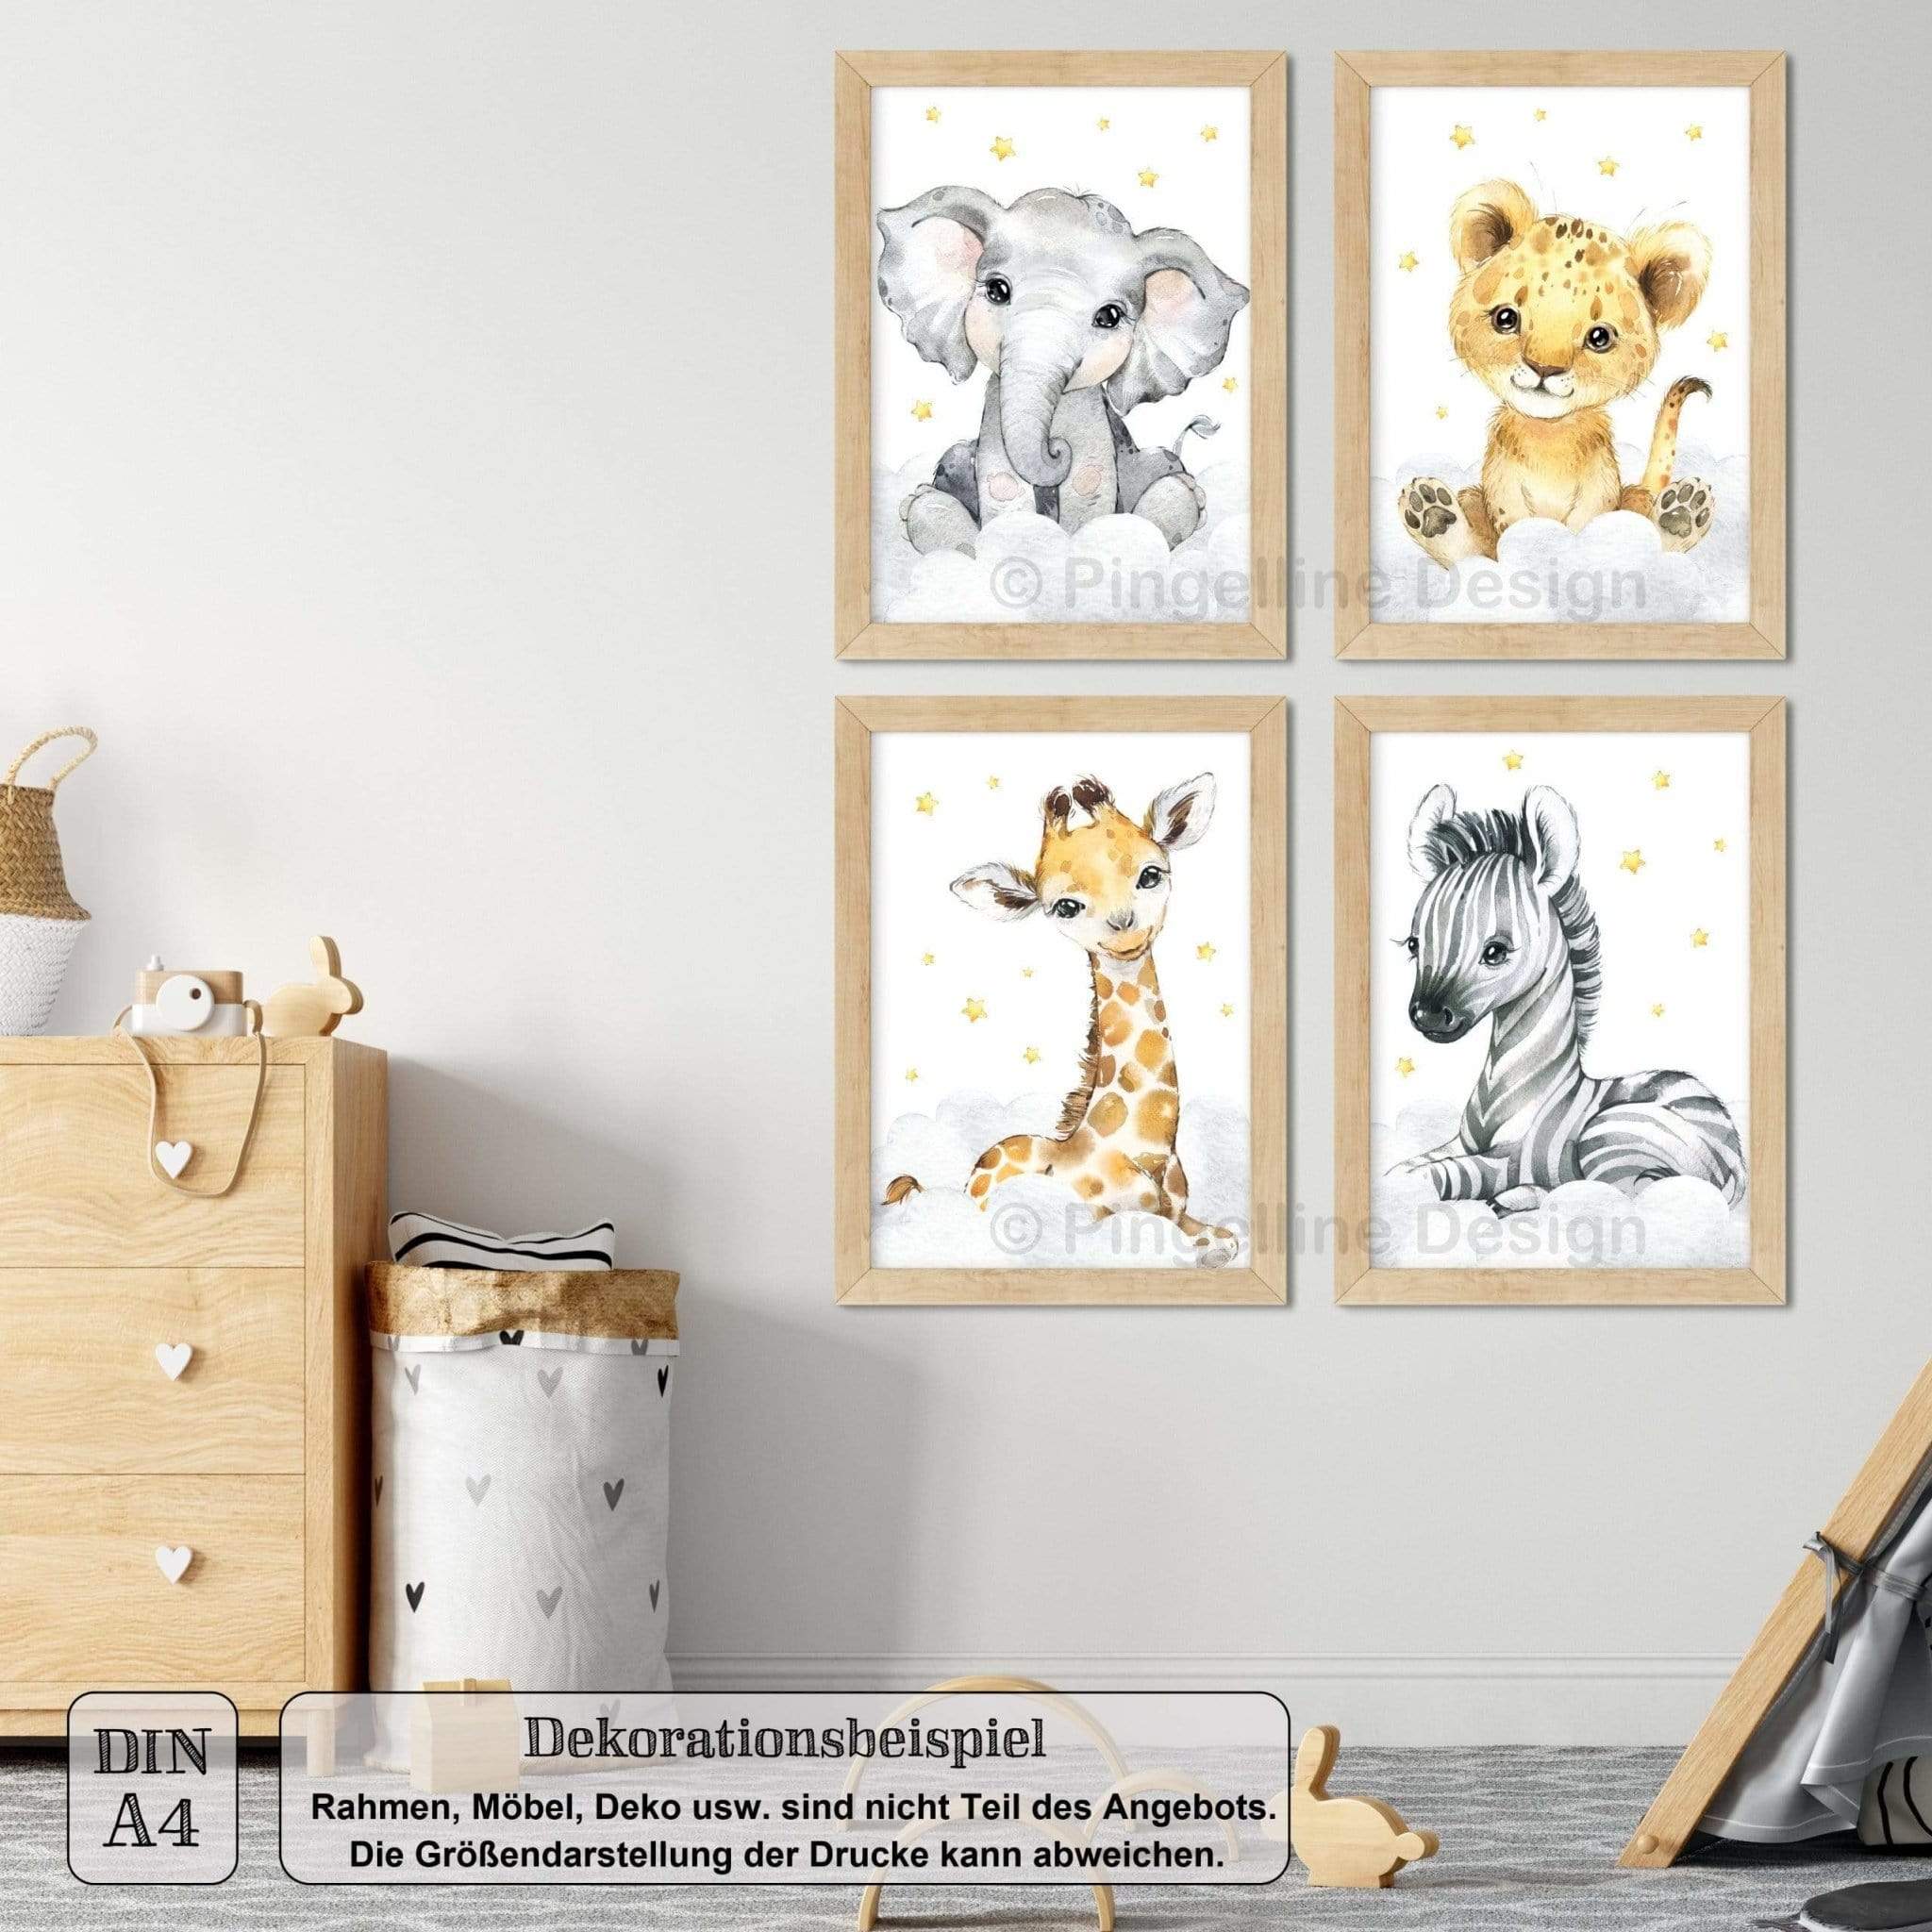 4er Set Bilder Kinderzimmer Safari Tiere A4 / A3 - Pingelline Design